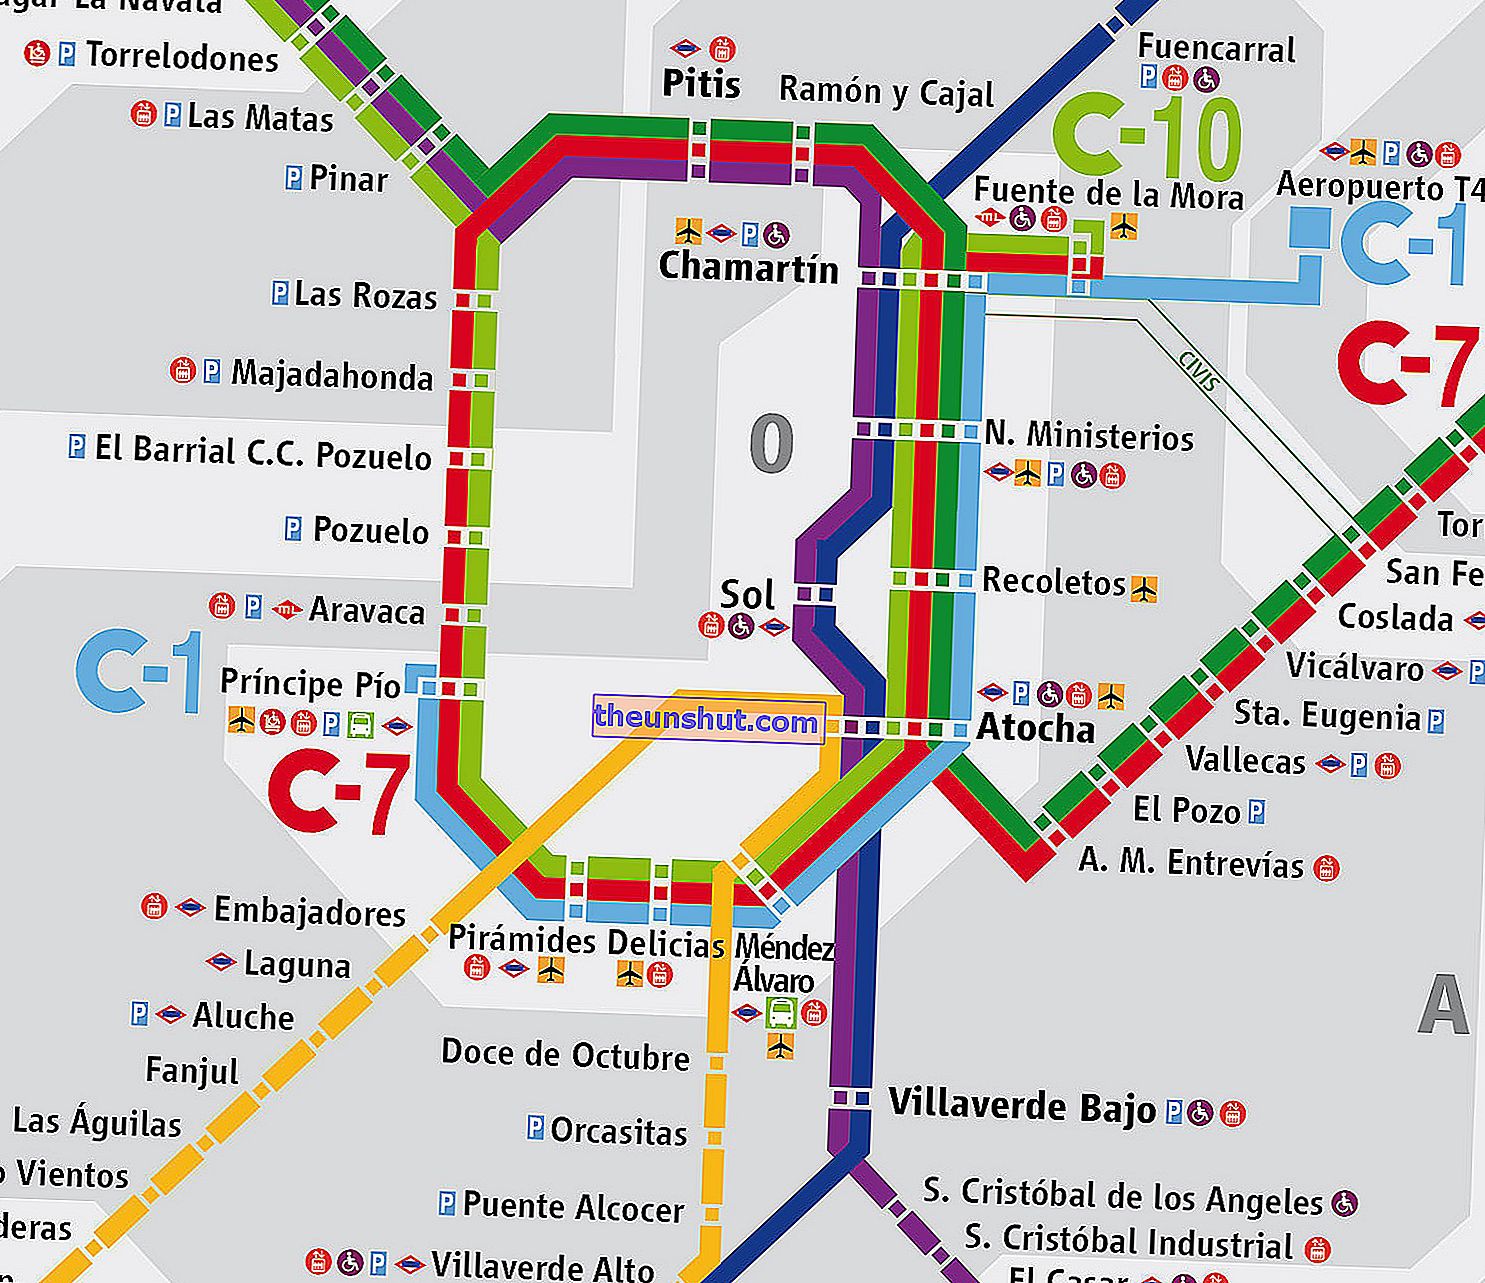 Mapa susedstva Madrid